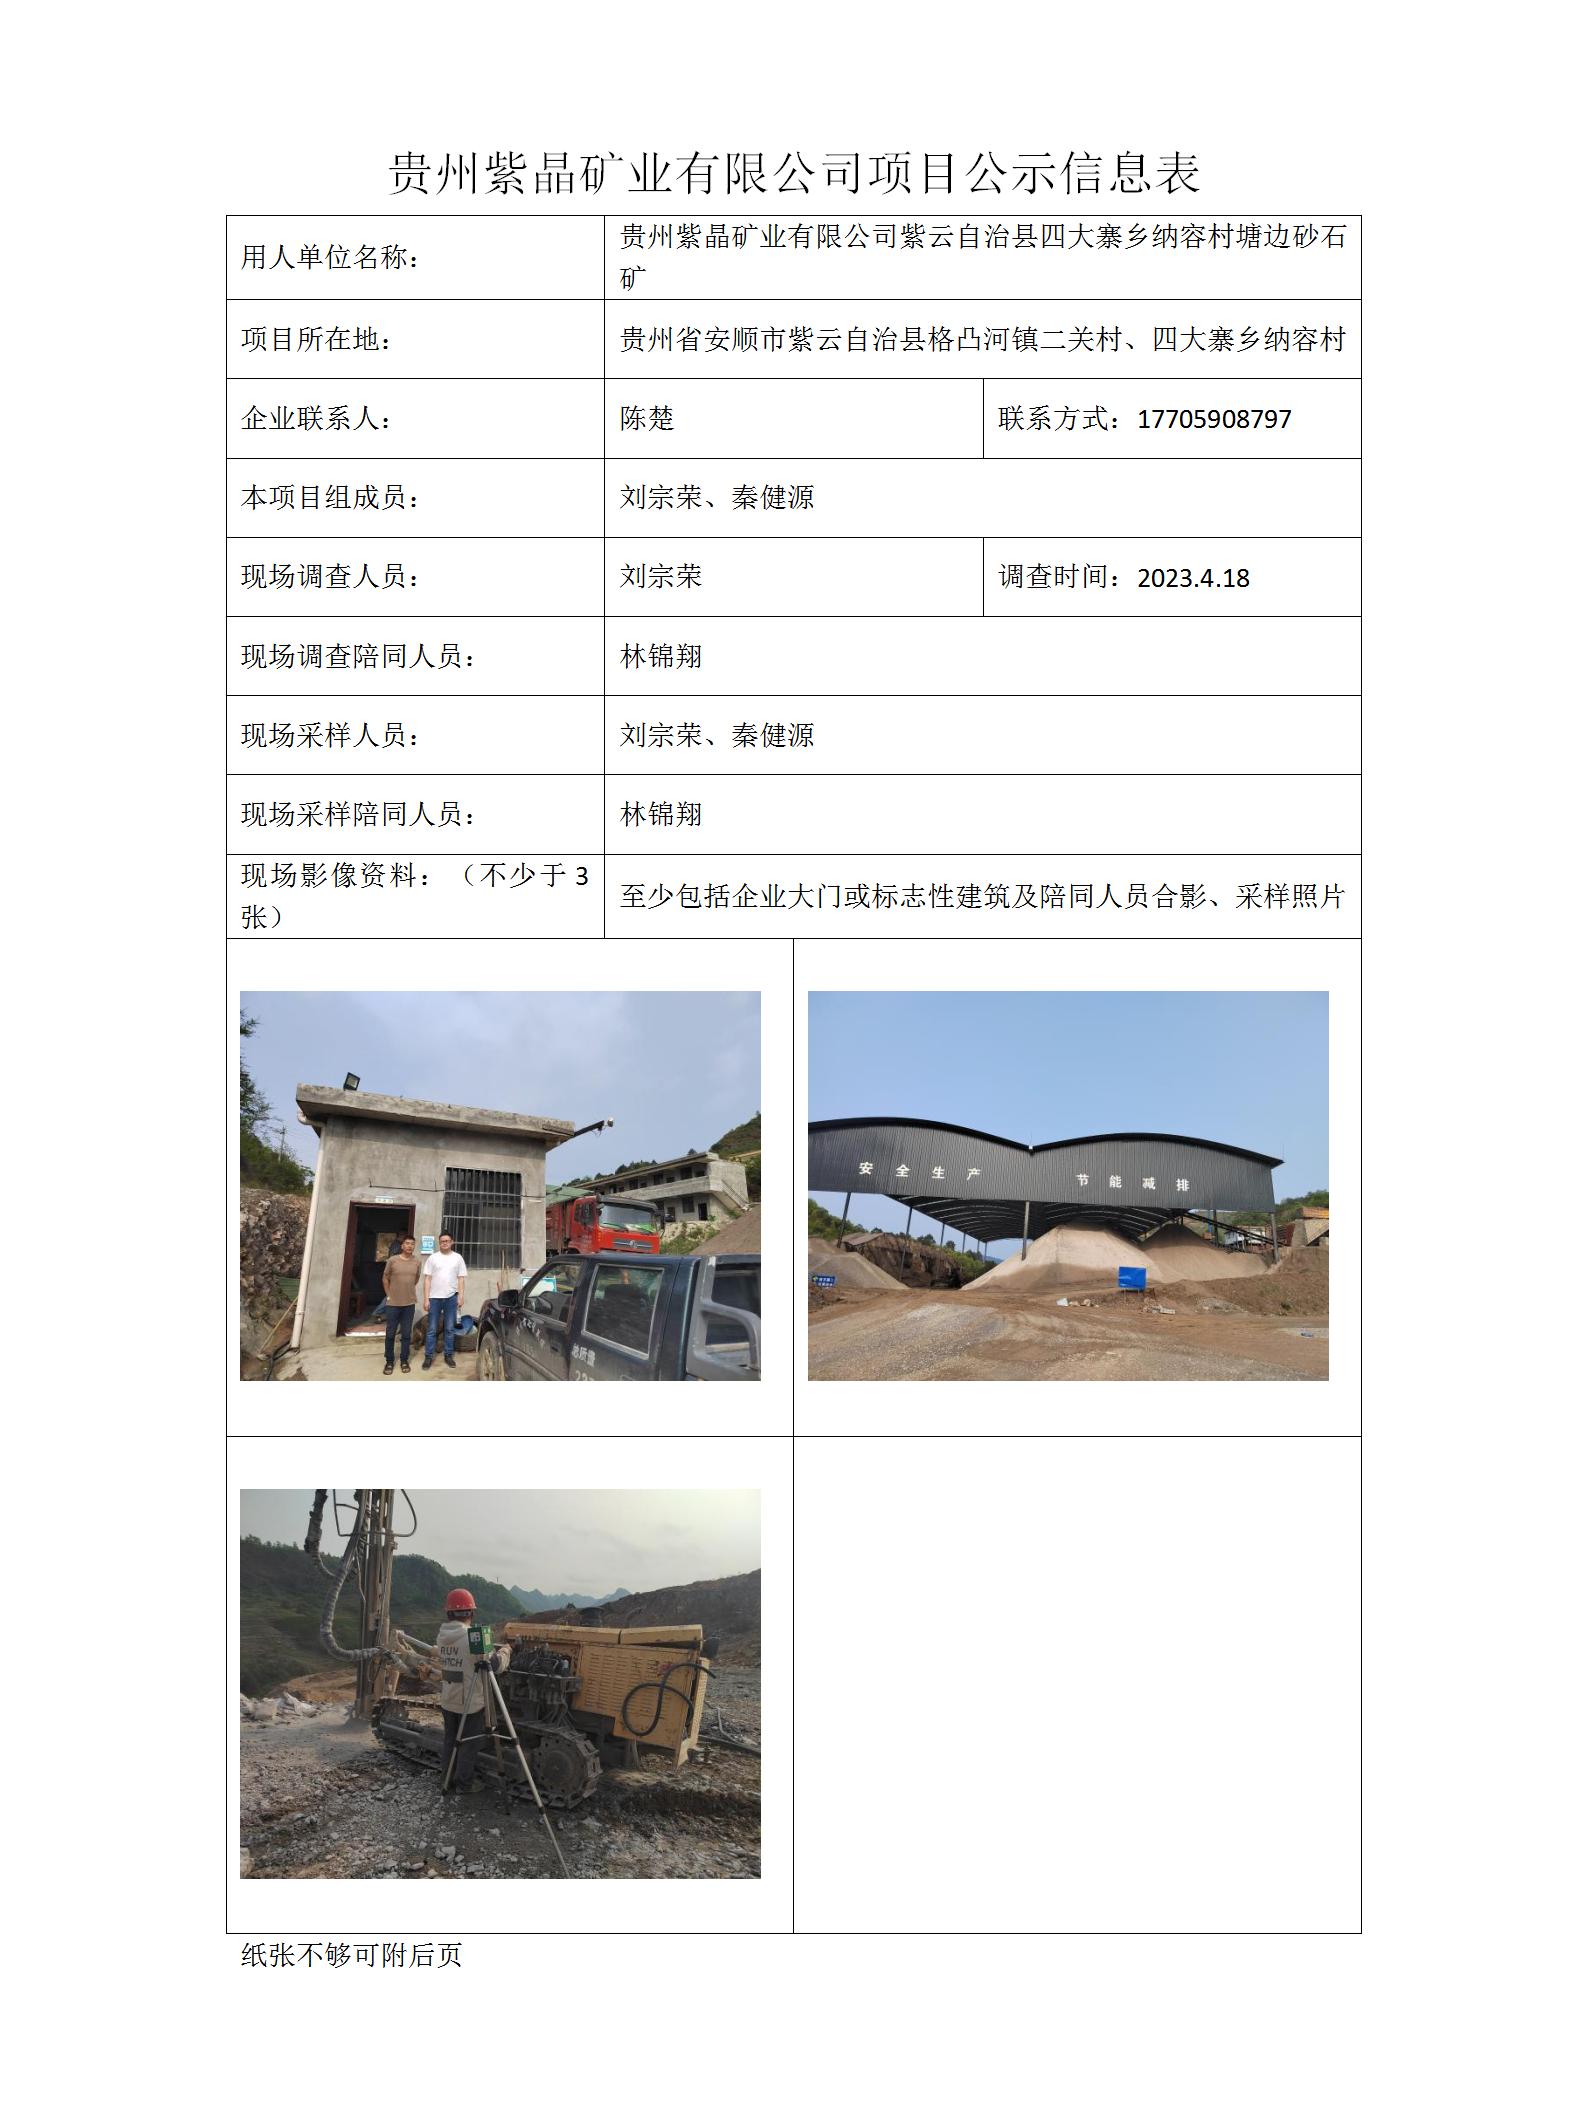 项目公示信息表-刘林-2023.11.2，紫晶矿业_01.jpg